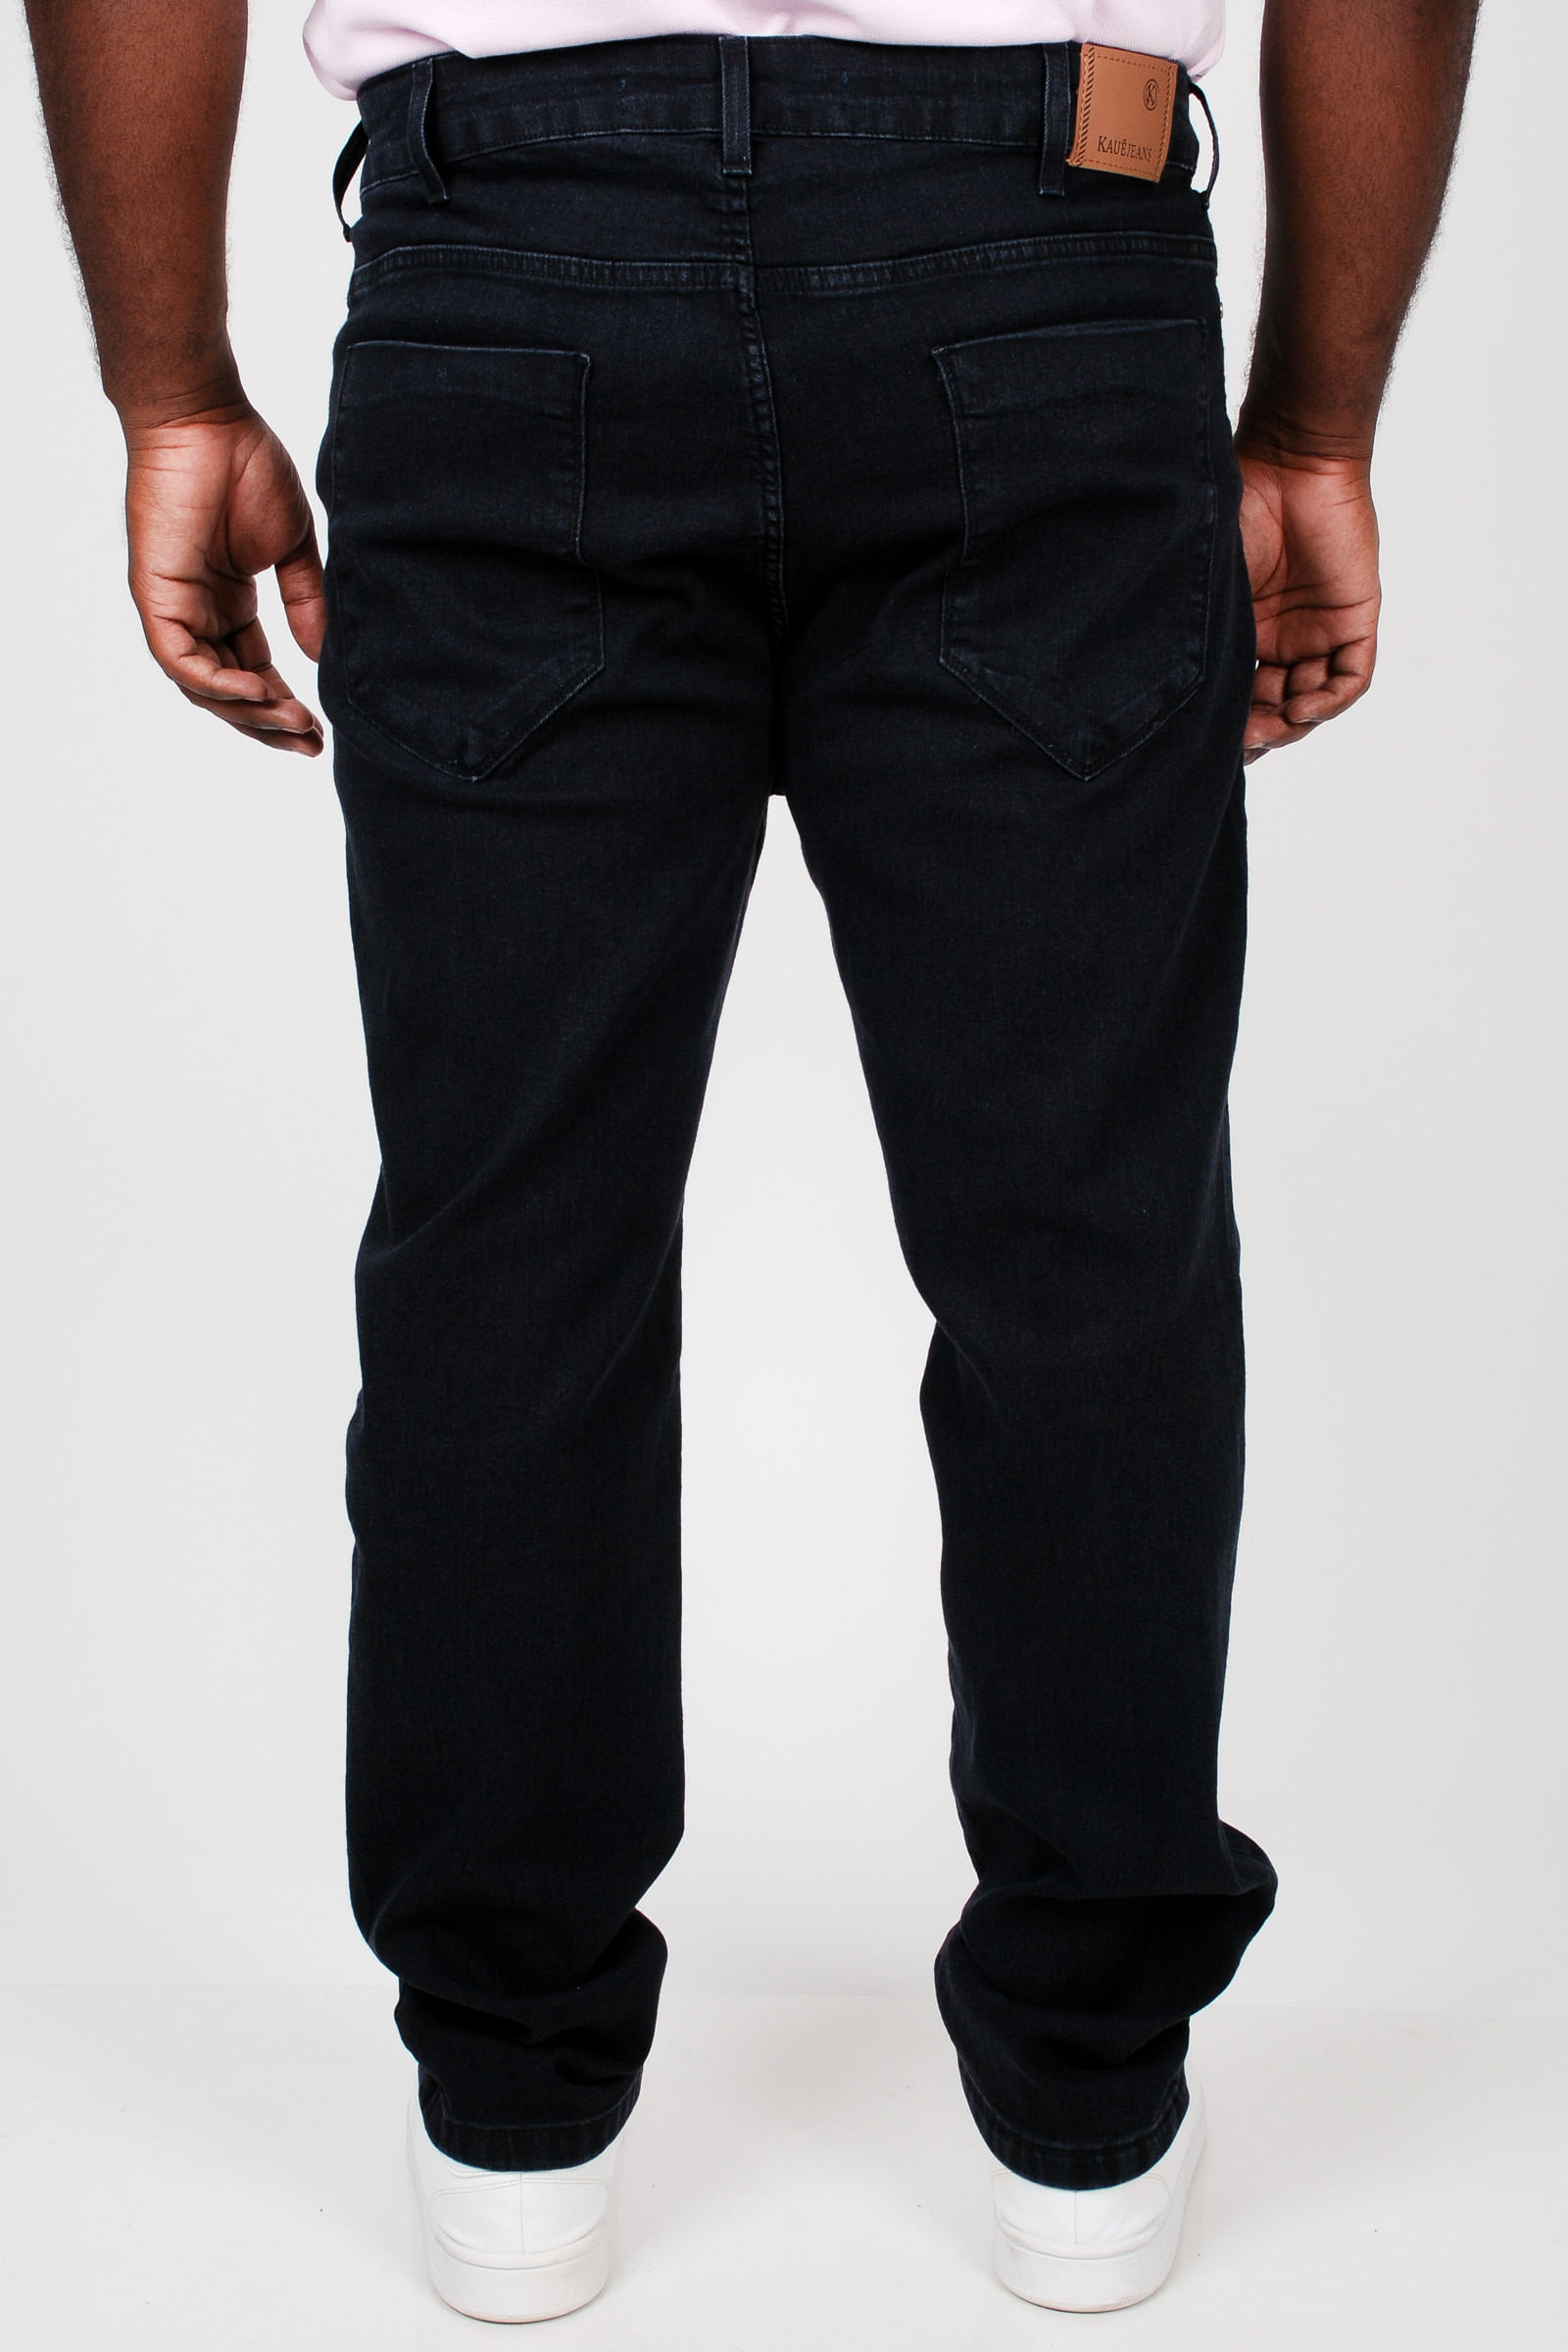 Calca-skinny-black-jeans-plus-size_0103_4